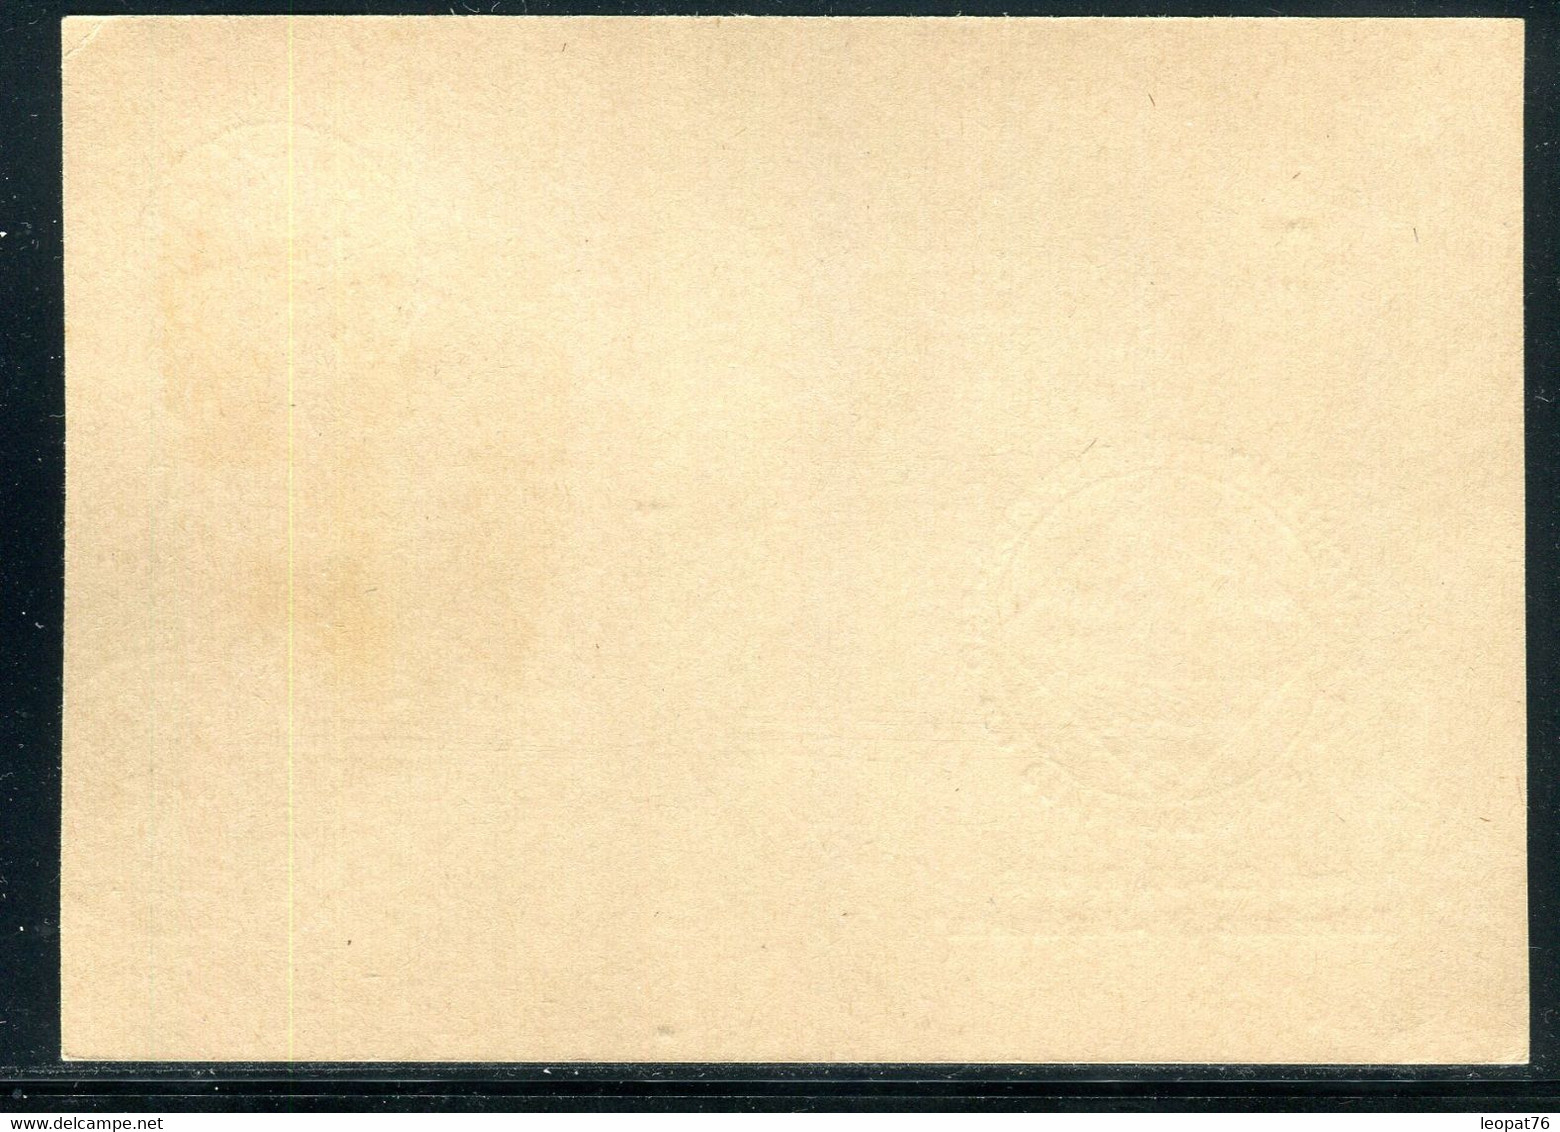 Allemagne - Cachet Sur Jeux D’Échecs Sur Entier Postal De Postdam En 1988 -  F 192 - Postkaarten - Gebruikt